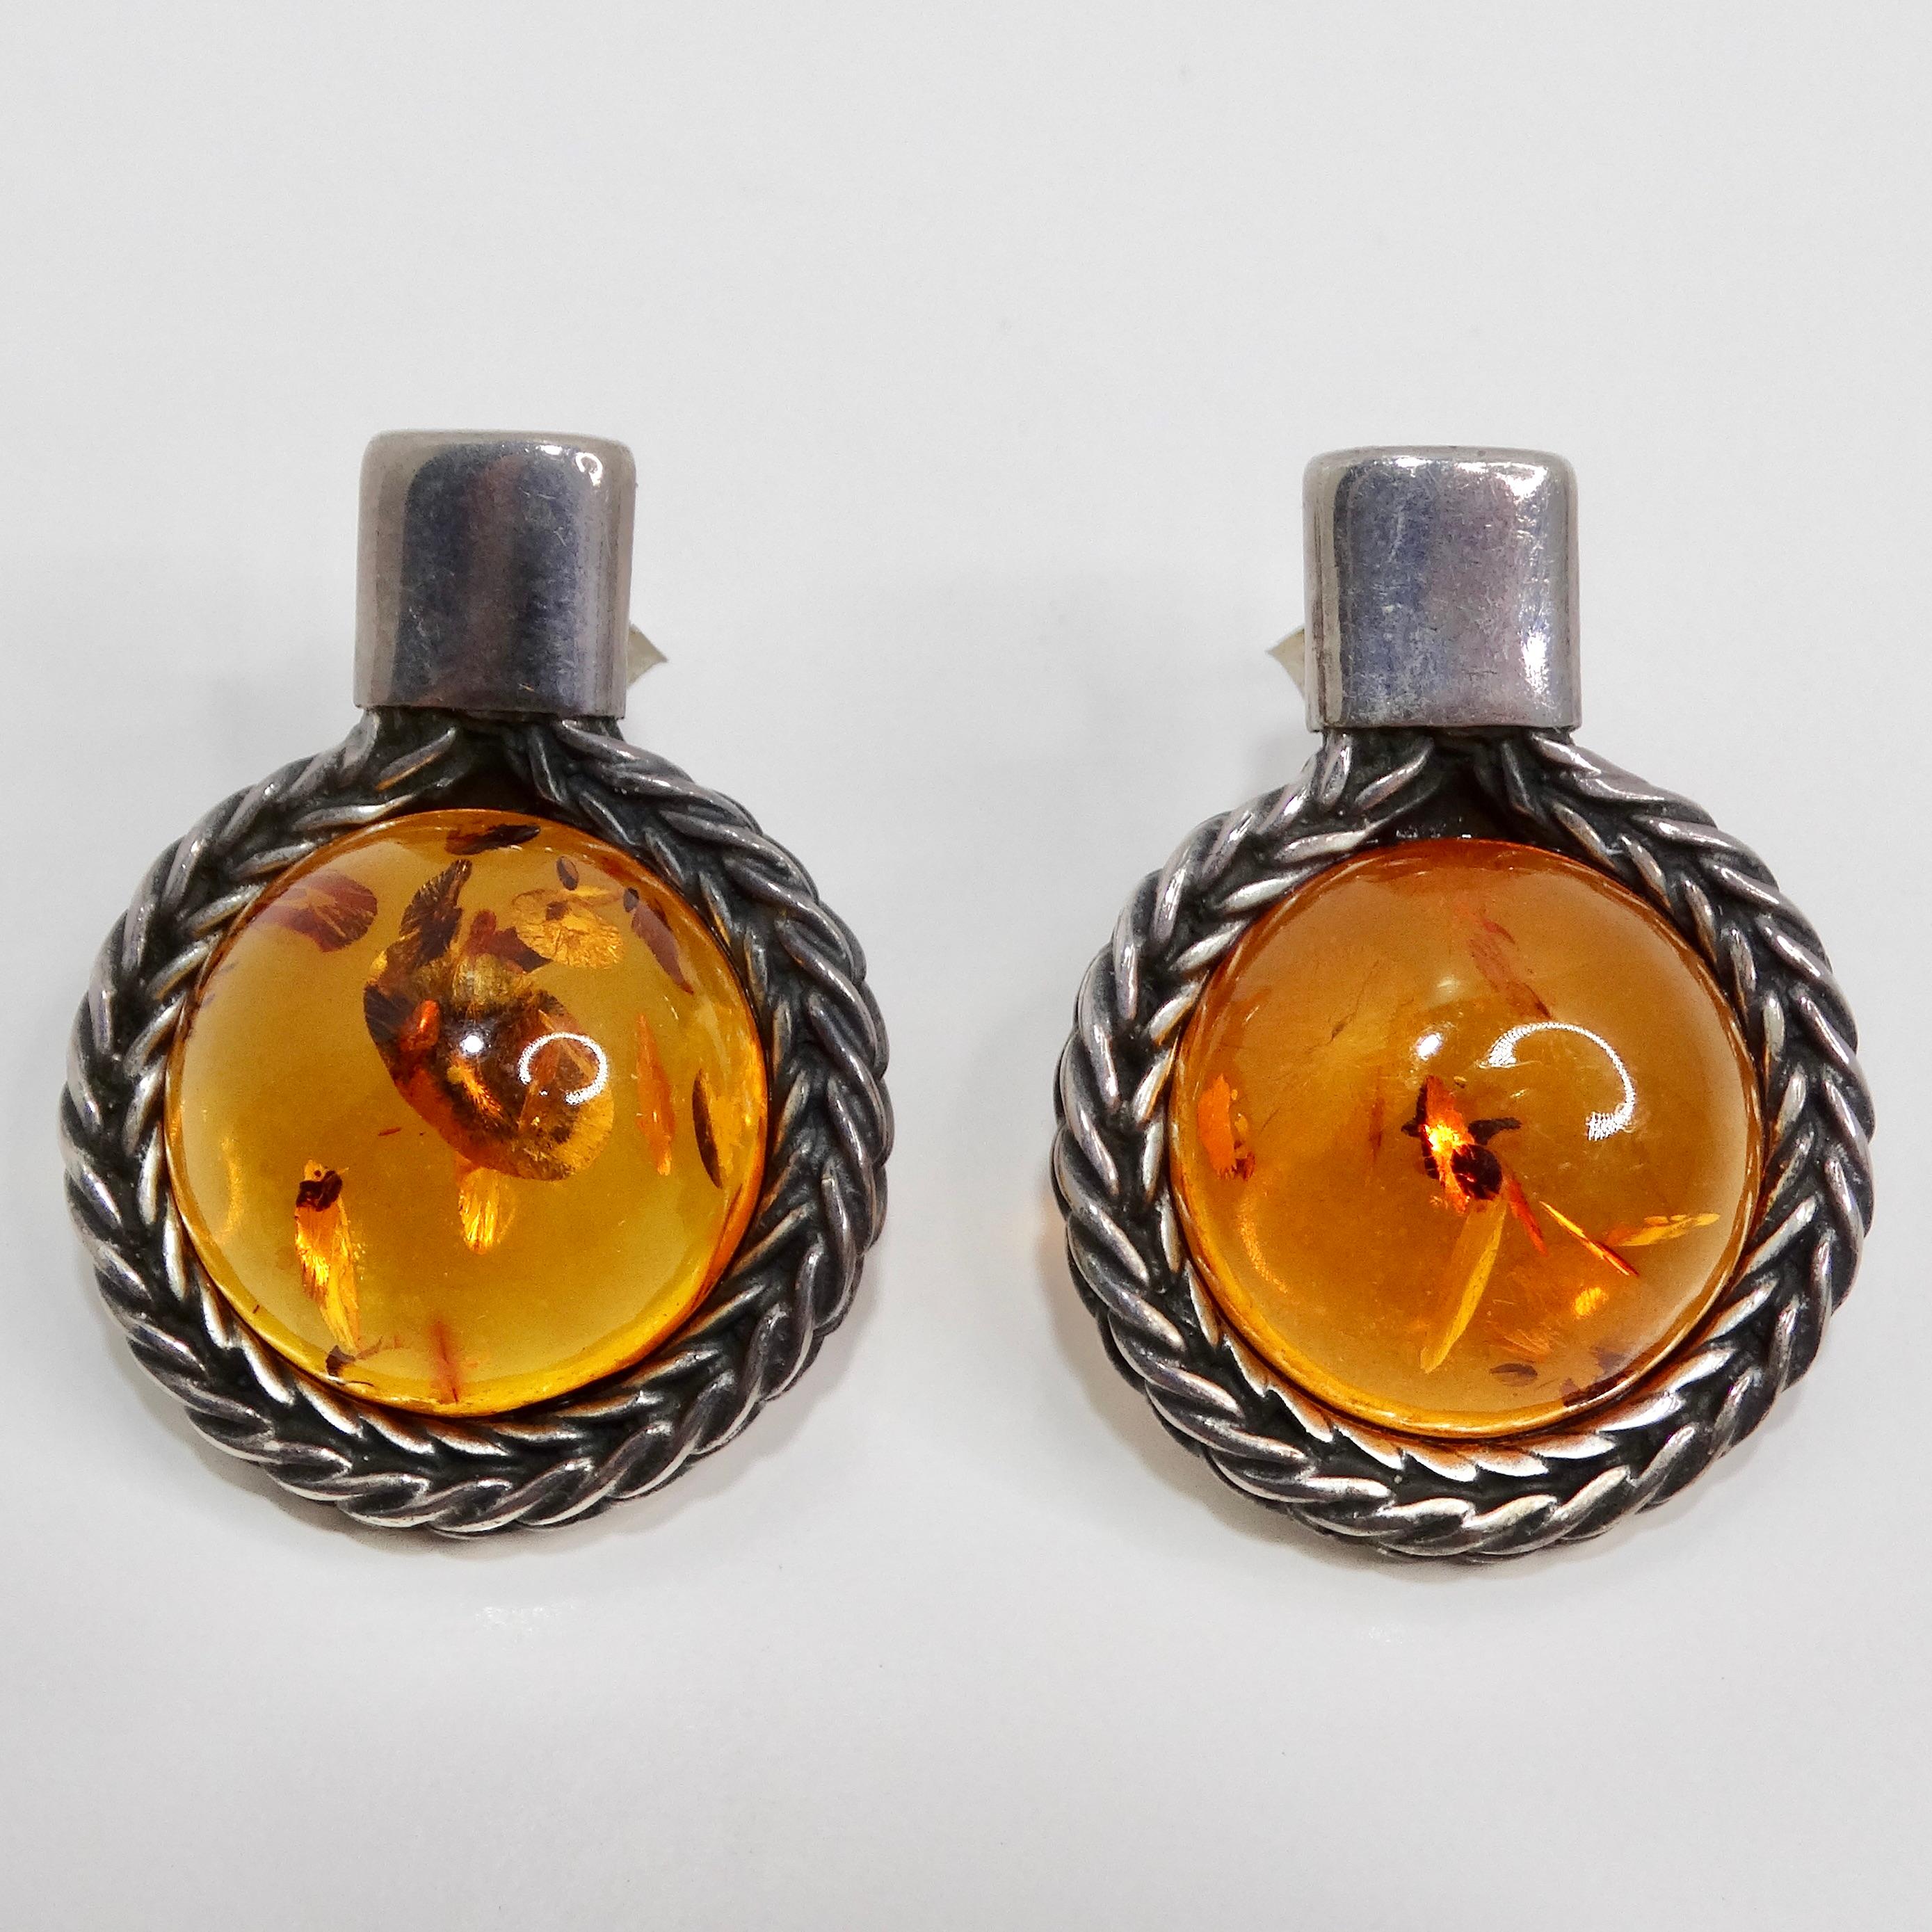 Les boucles d'oreilles d'ambre en argent des années 1960 sont une magnifique paire vintage qui capture l'élégance intemporelle et l'allure vibrante de l'ambre. Ces superbes boucles d'oreilles sont ornées de pierres d'ambre rondes, chacune présentant